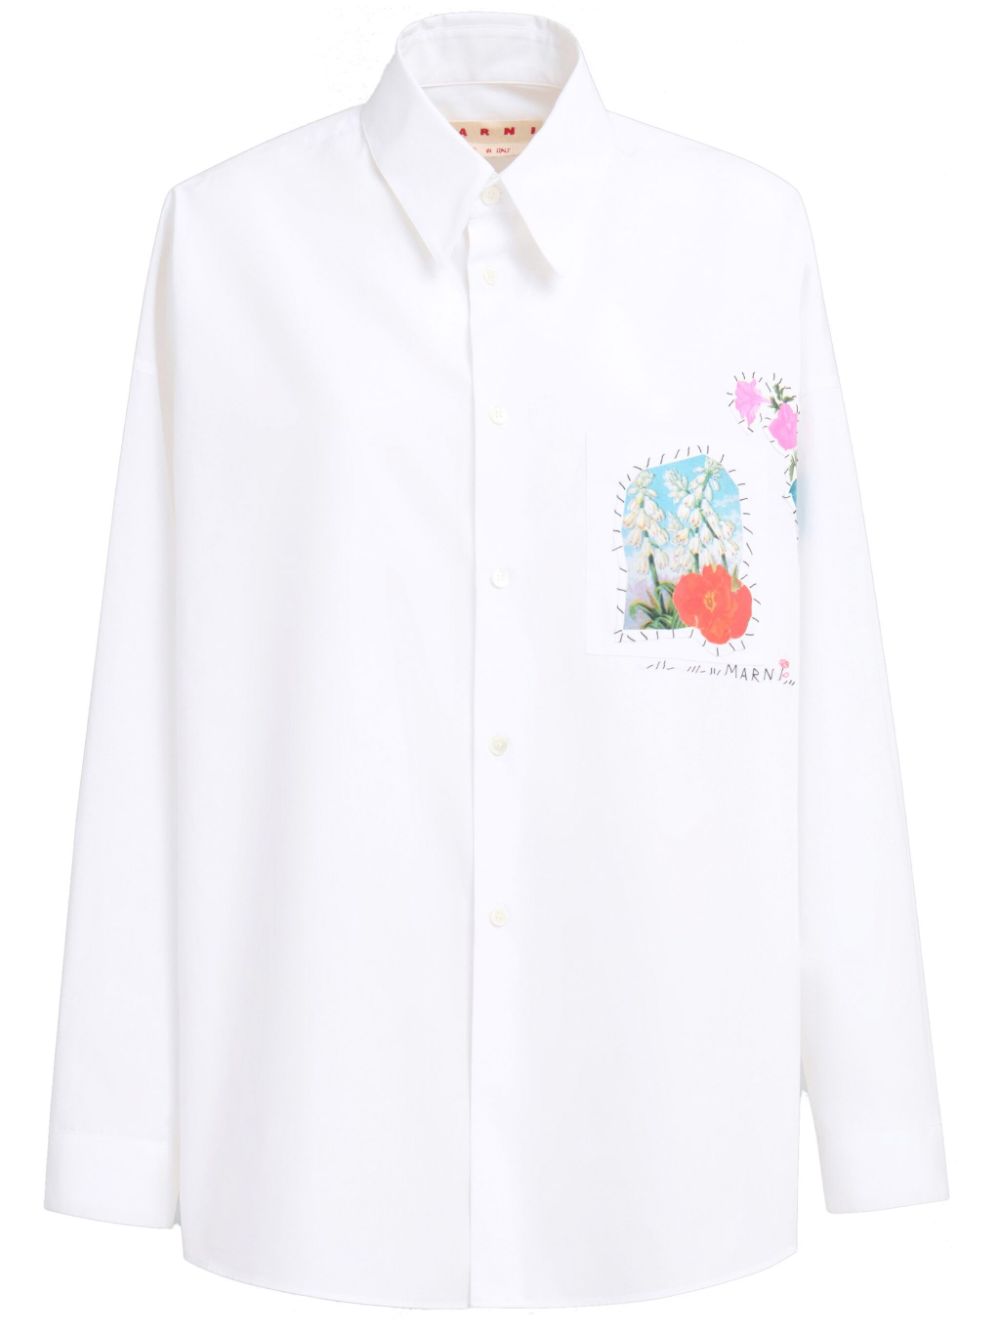 Camicia bianca con applicazione fiori